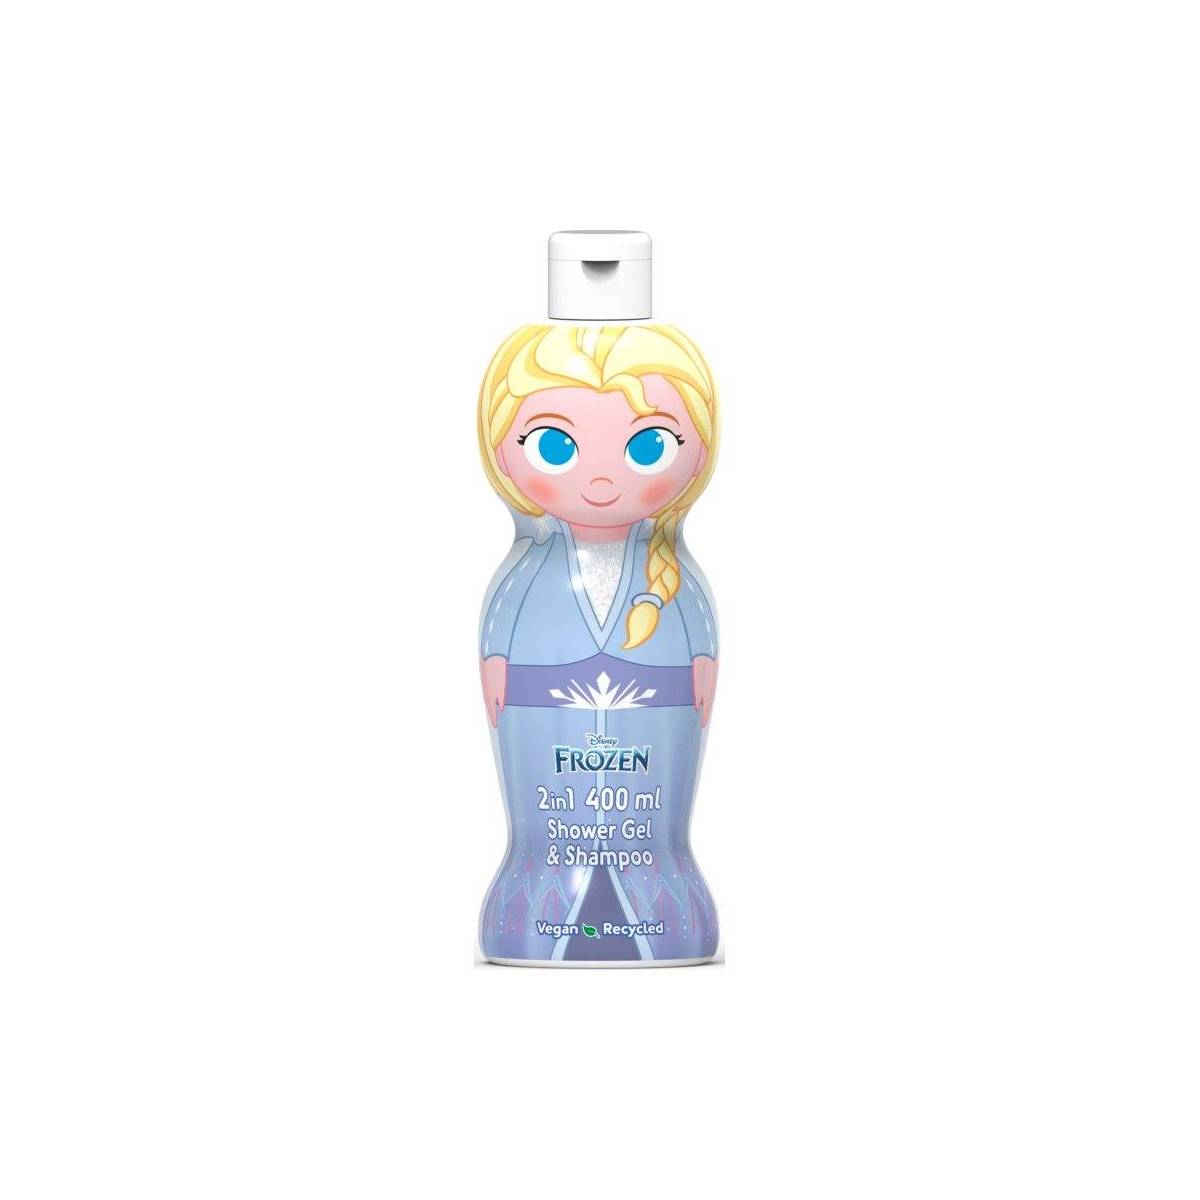 Frozen Elsa 2in1 shower gel & shampoo 400 ml